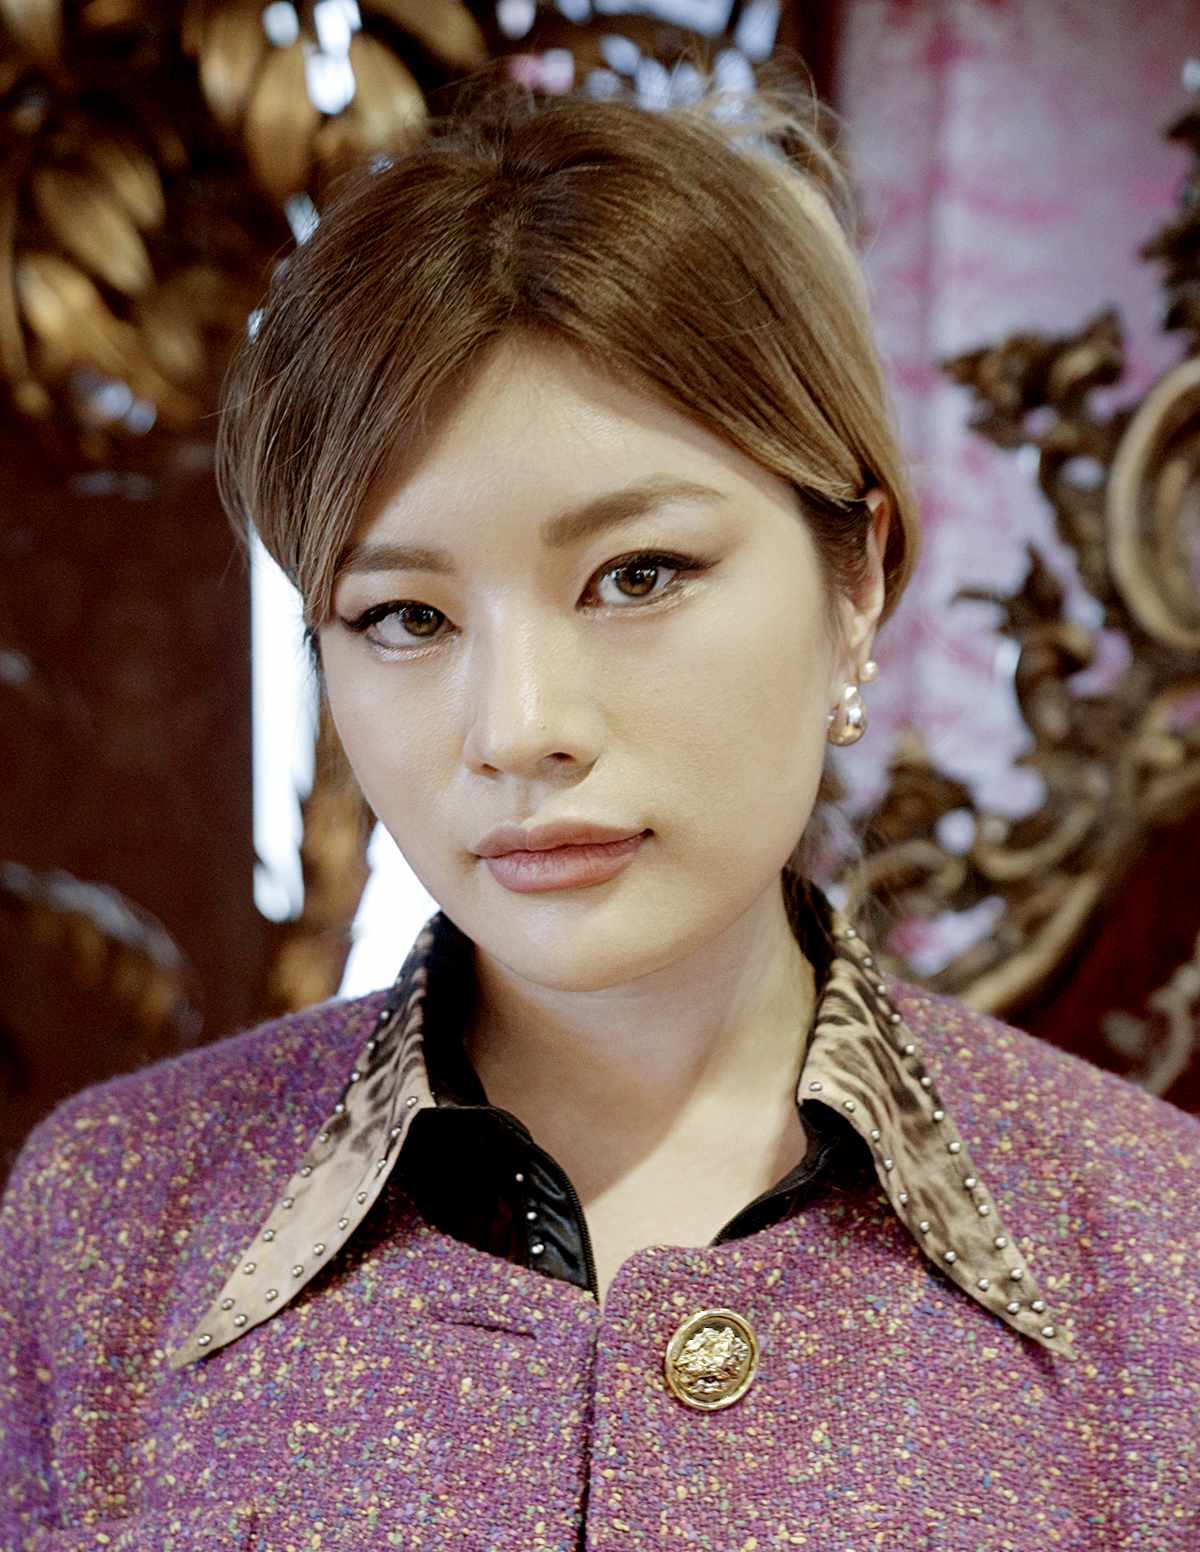 Dolce&Gabbana For Miss Sohee